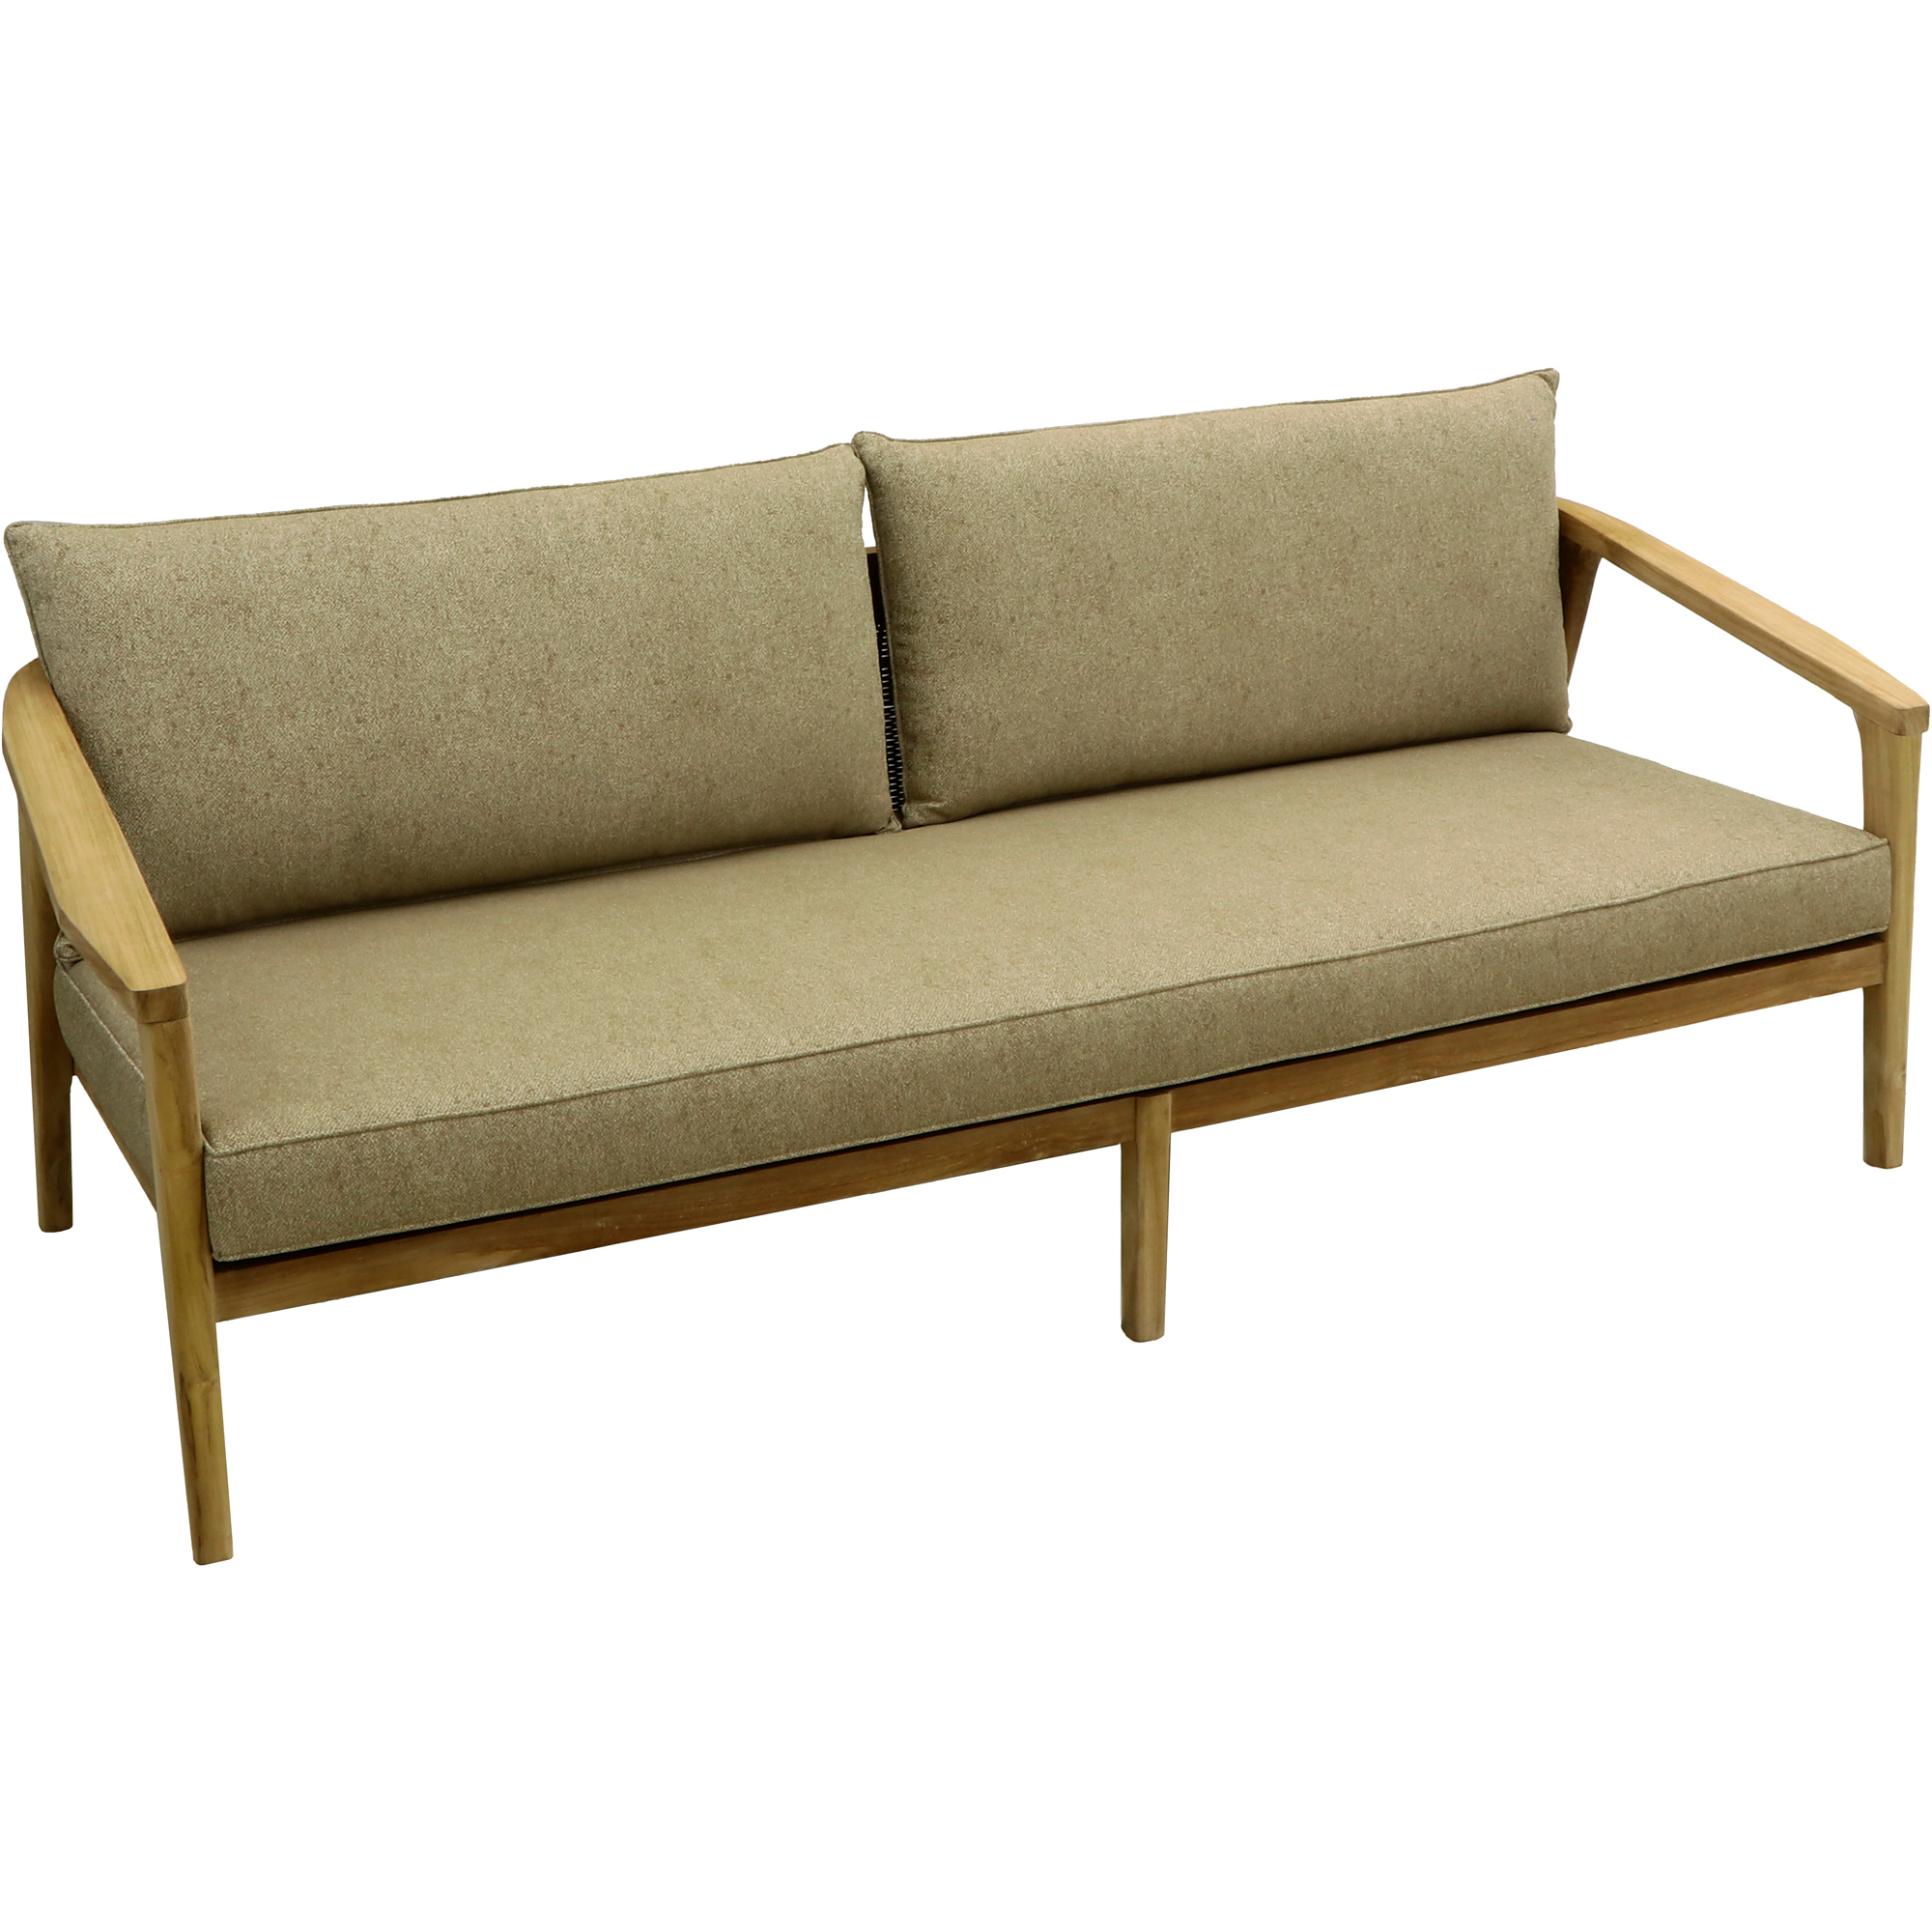 Комплект мебели Jepara Porto Cervo l 6 предметов, цвет коричневый, размер 82х210х85 - фото 6